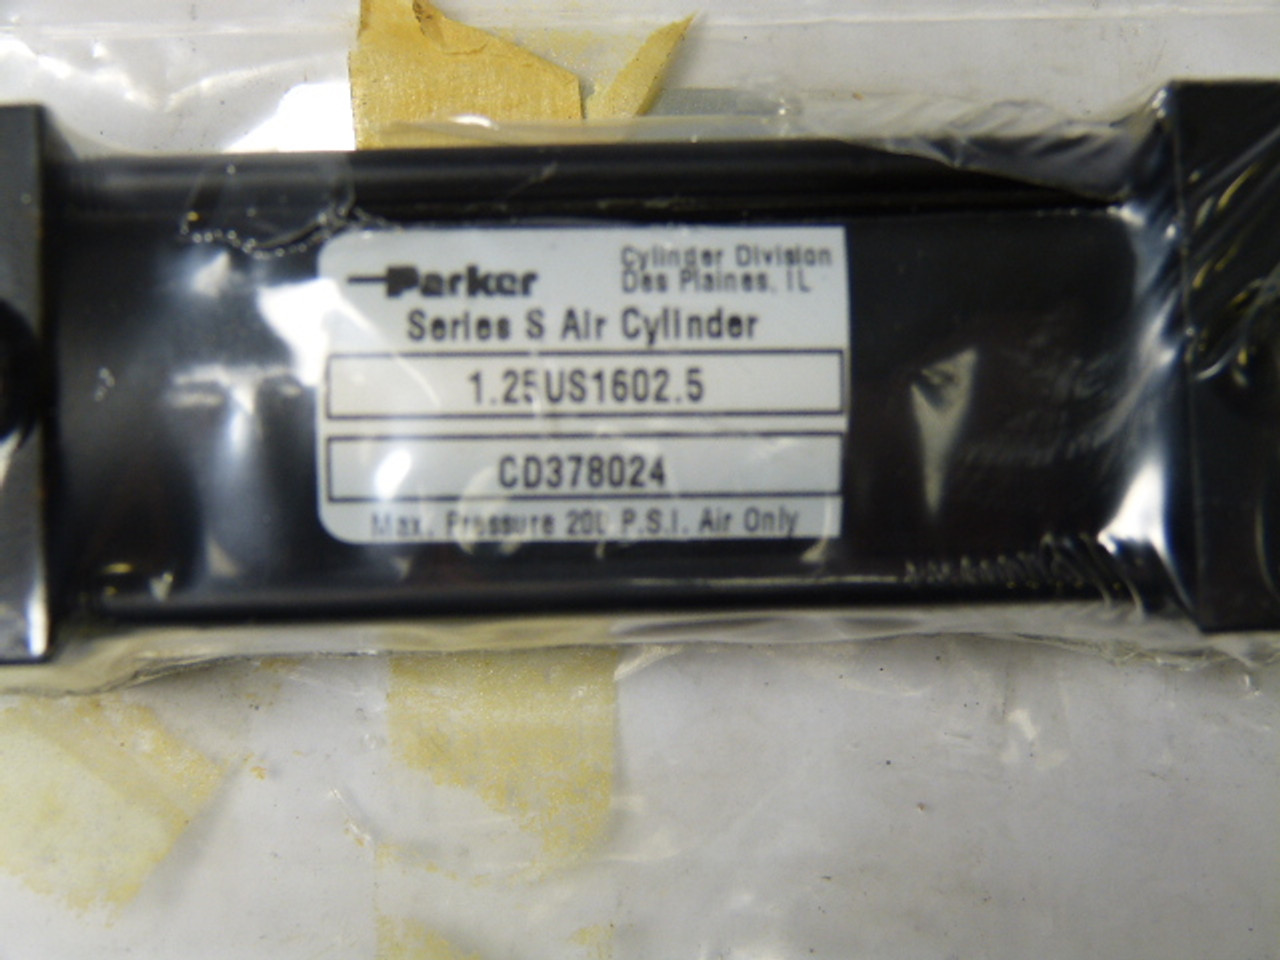 Parker 1.12US1602.5 Pneumatic Cylinder 1.12" Bore 2.5" Stroke ! NOP !